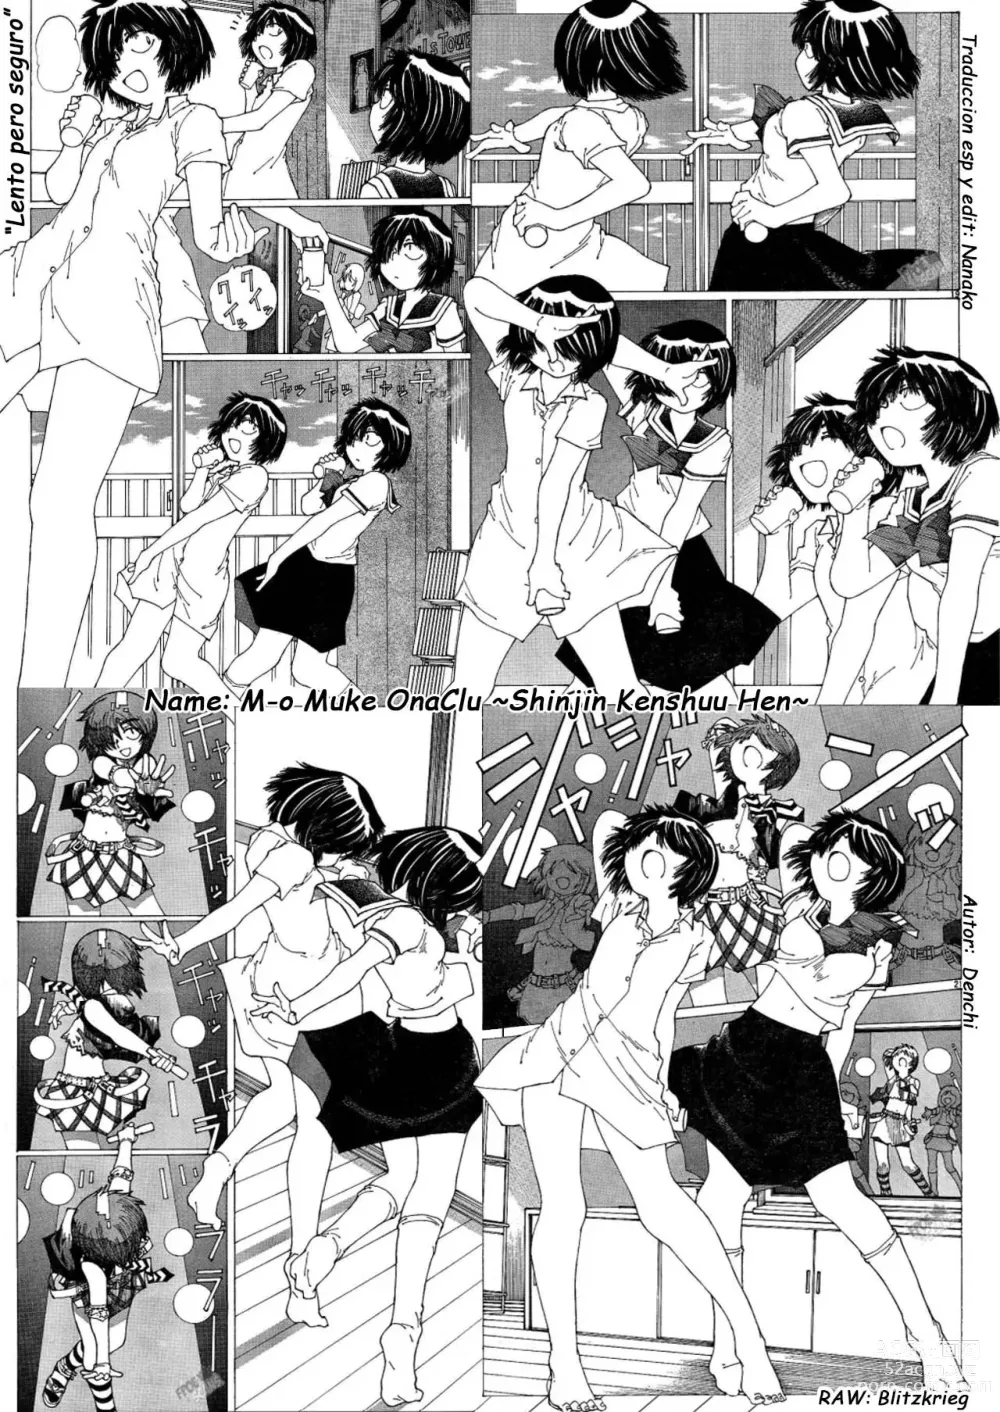 Page 41 of doujinshi M-o Muke OnaClu -Shinjin Kenshuu Hen-